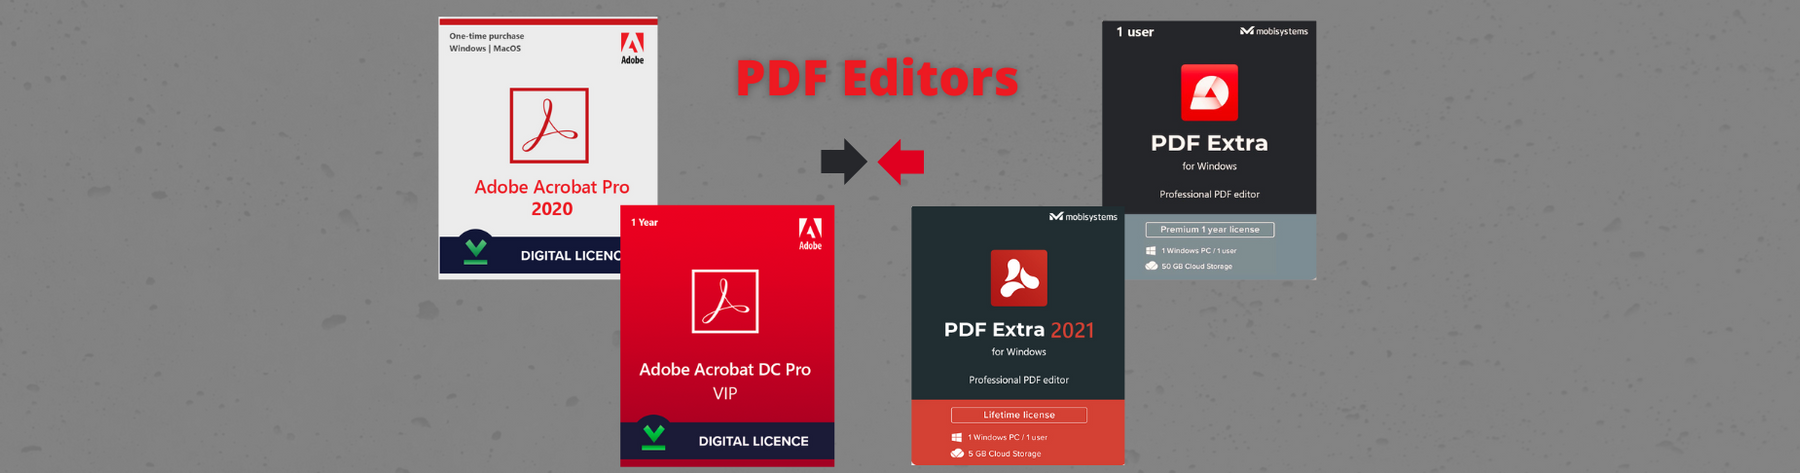 Comparaison entre Adobe Acrobat Pro et PDF Extra